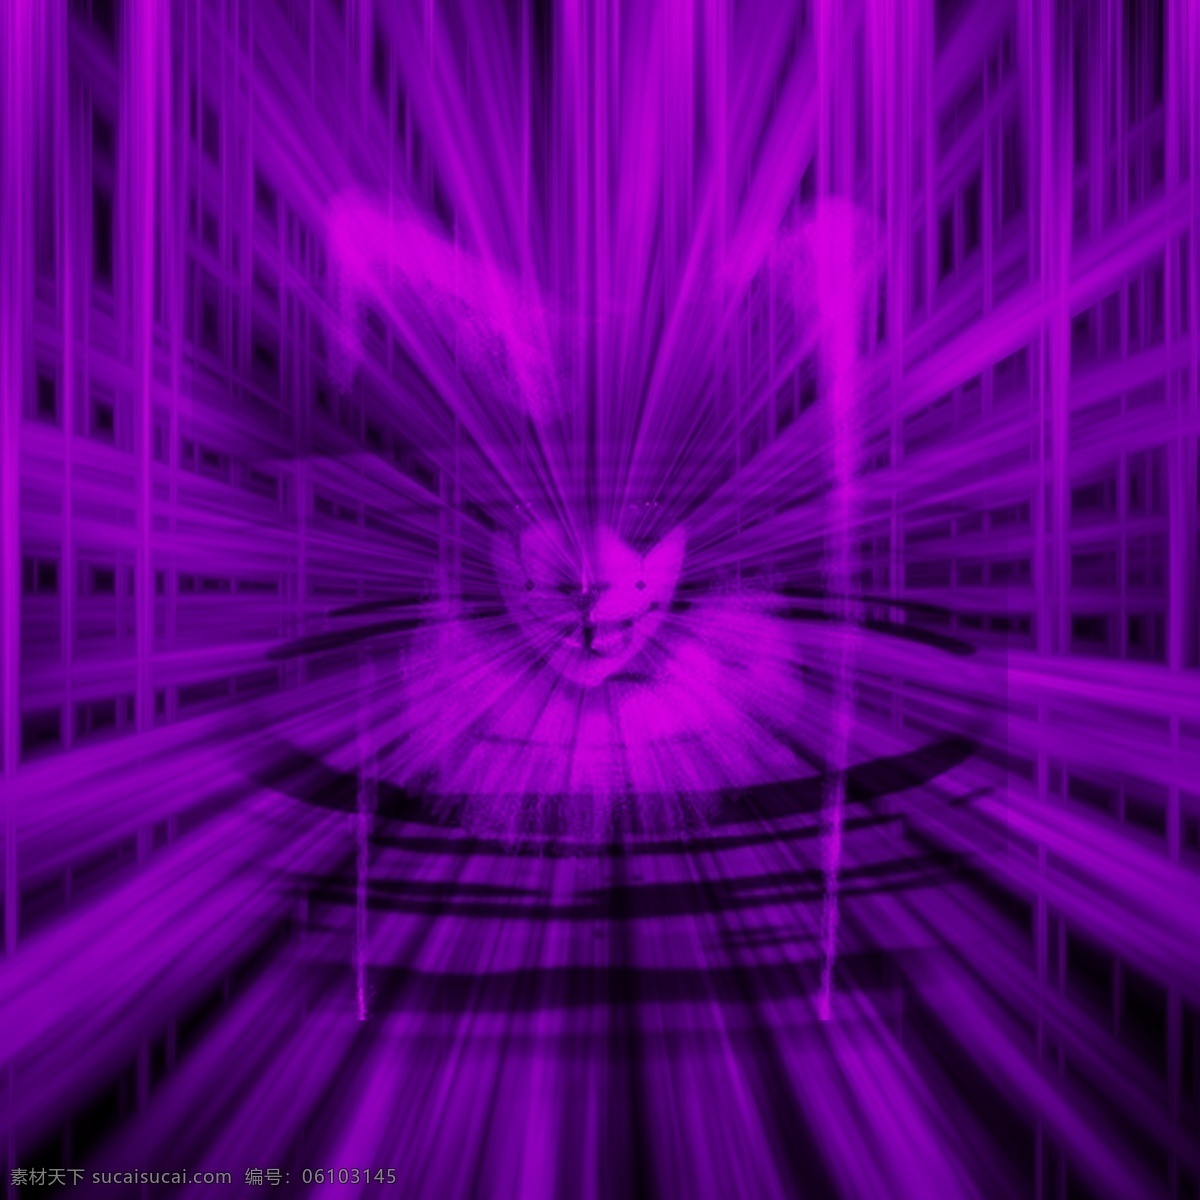 紫陌空间 是为困魔之地 九为数之极 九千年已过 封印衰 紫魔欲出